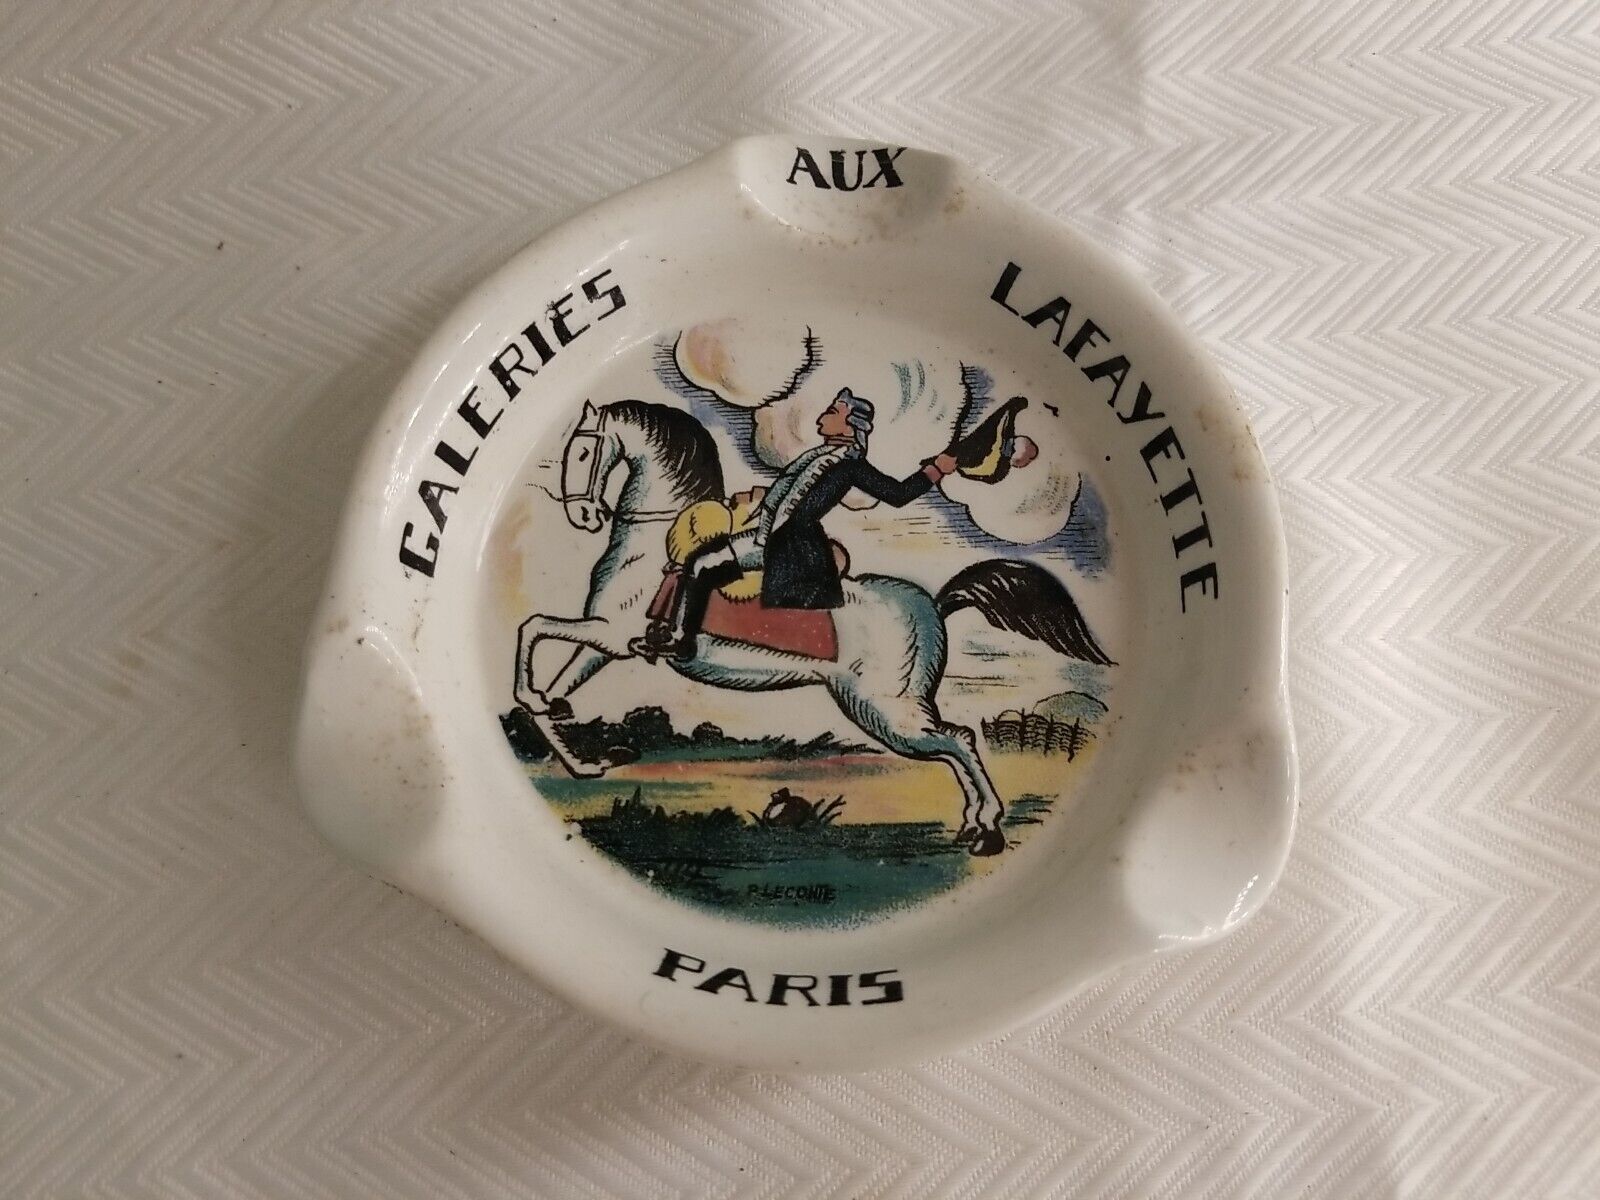 SARREGUEMINES Aux Galeries Lafayette Paris Porcelain Ashtray Bowl Trinket Dish